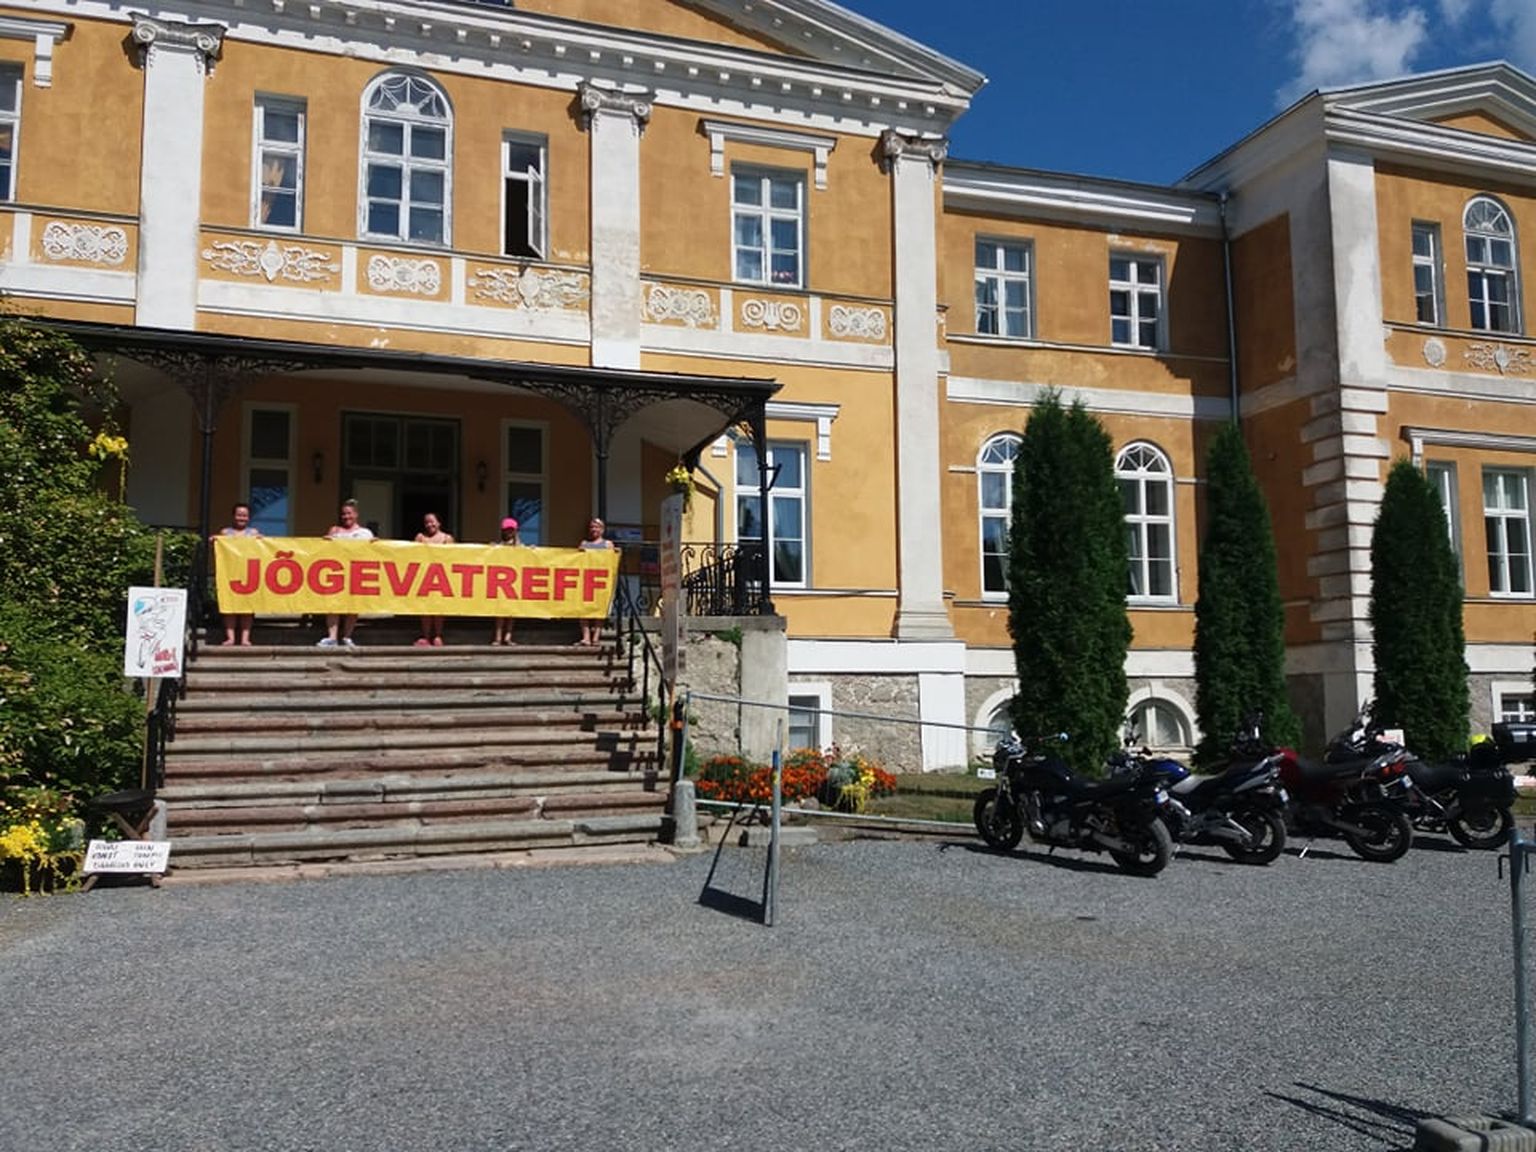 Motokokkutlueku Jõgevatreff staap asub Kuremaa lossis, viimased ettevalmistused kokkutuleku korraldusmeeskonnalt on juba praegu käimas.